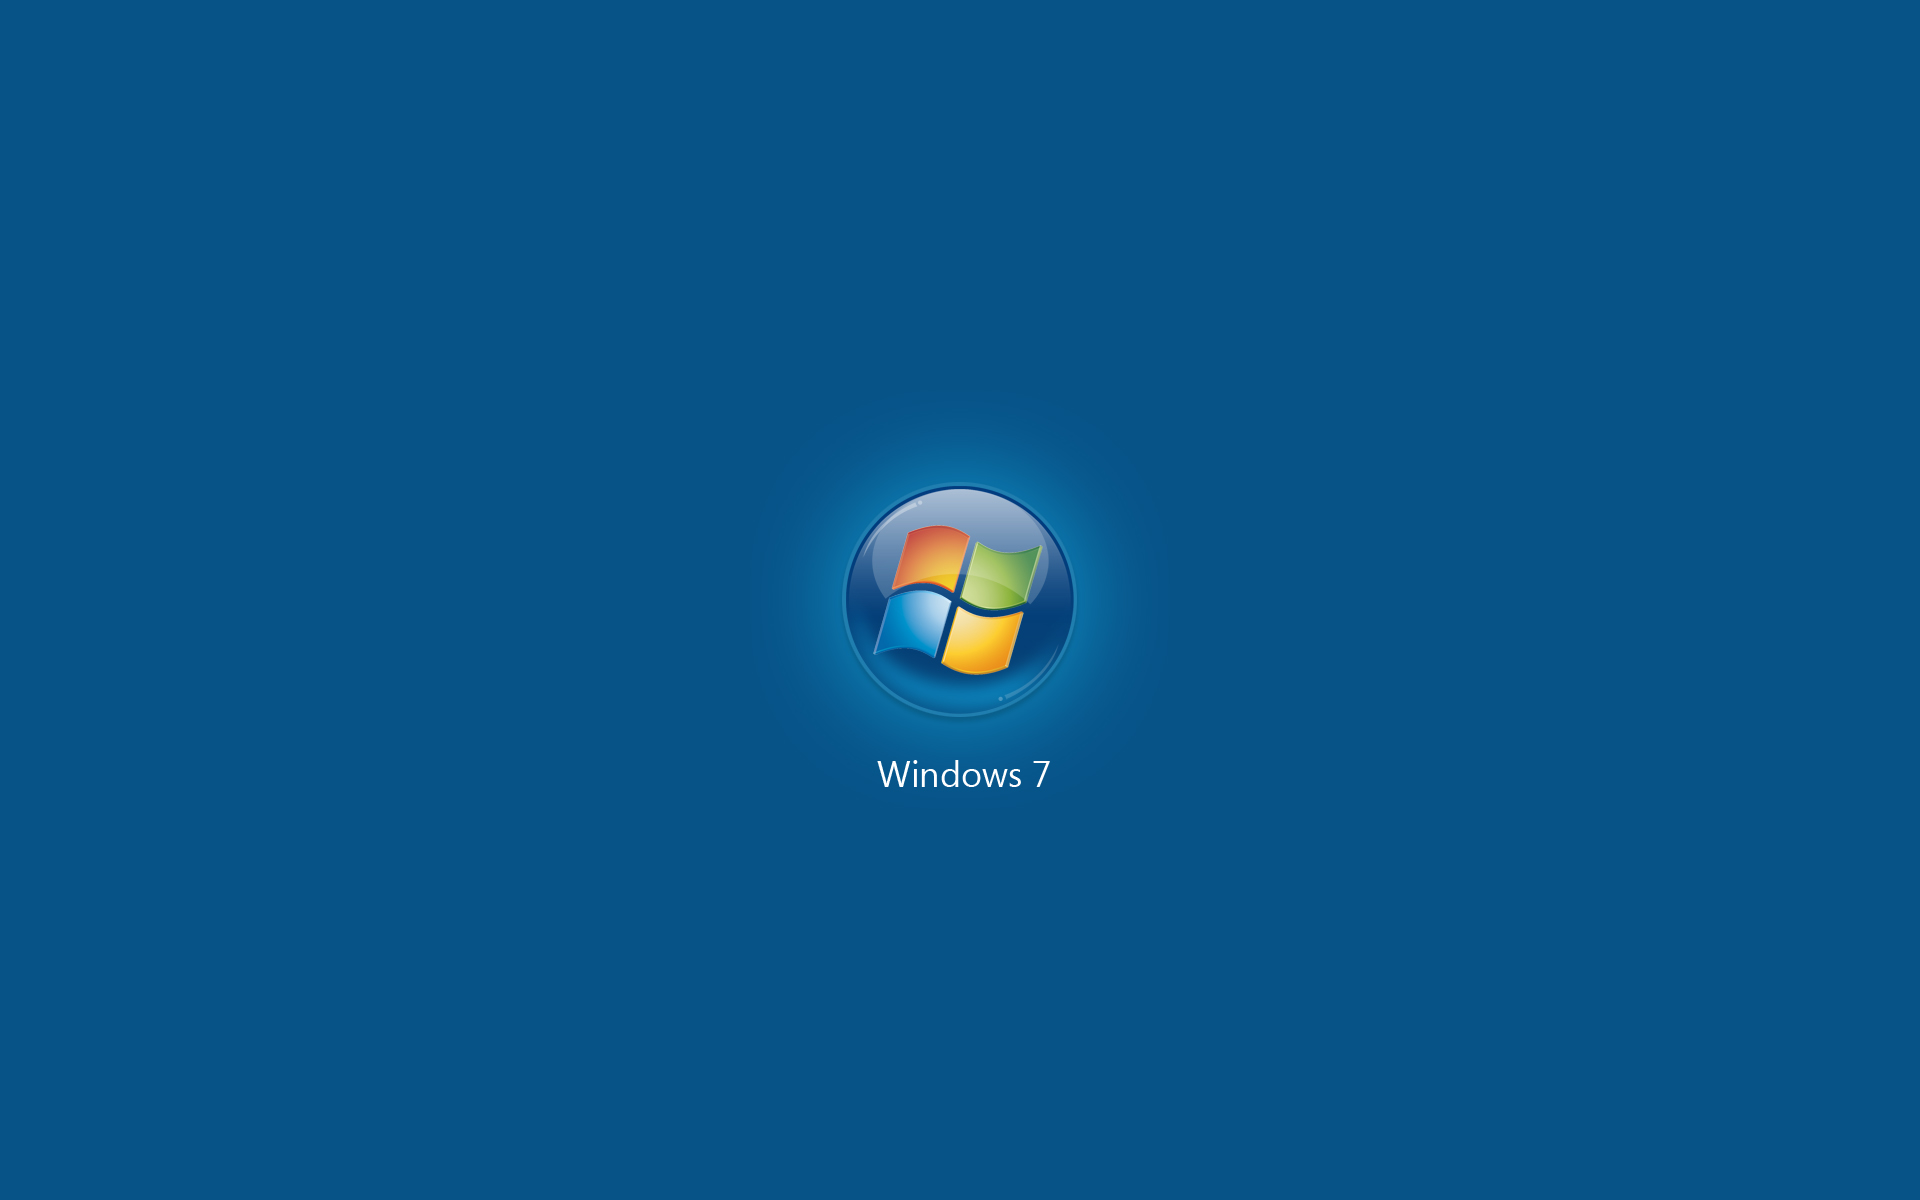 Trang trí máy tính của bạn với bộ sưu tập hình nền miễn phí cho Microsoft Windows